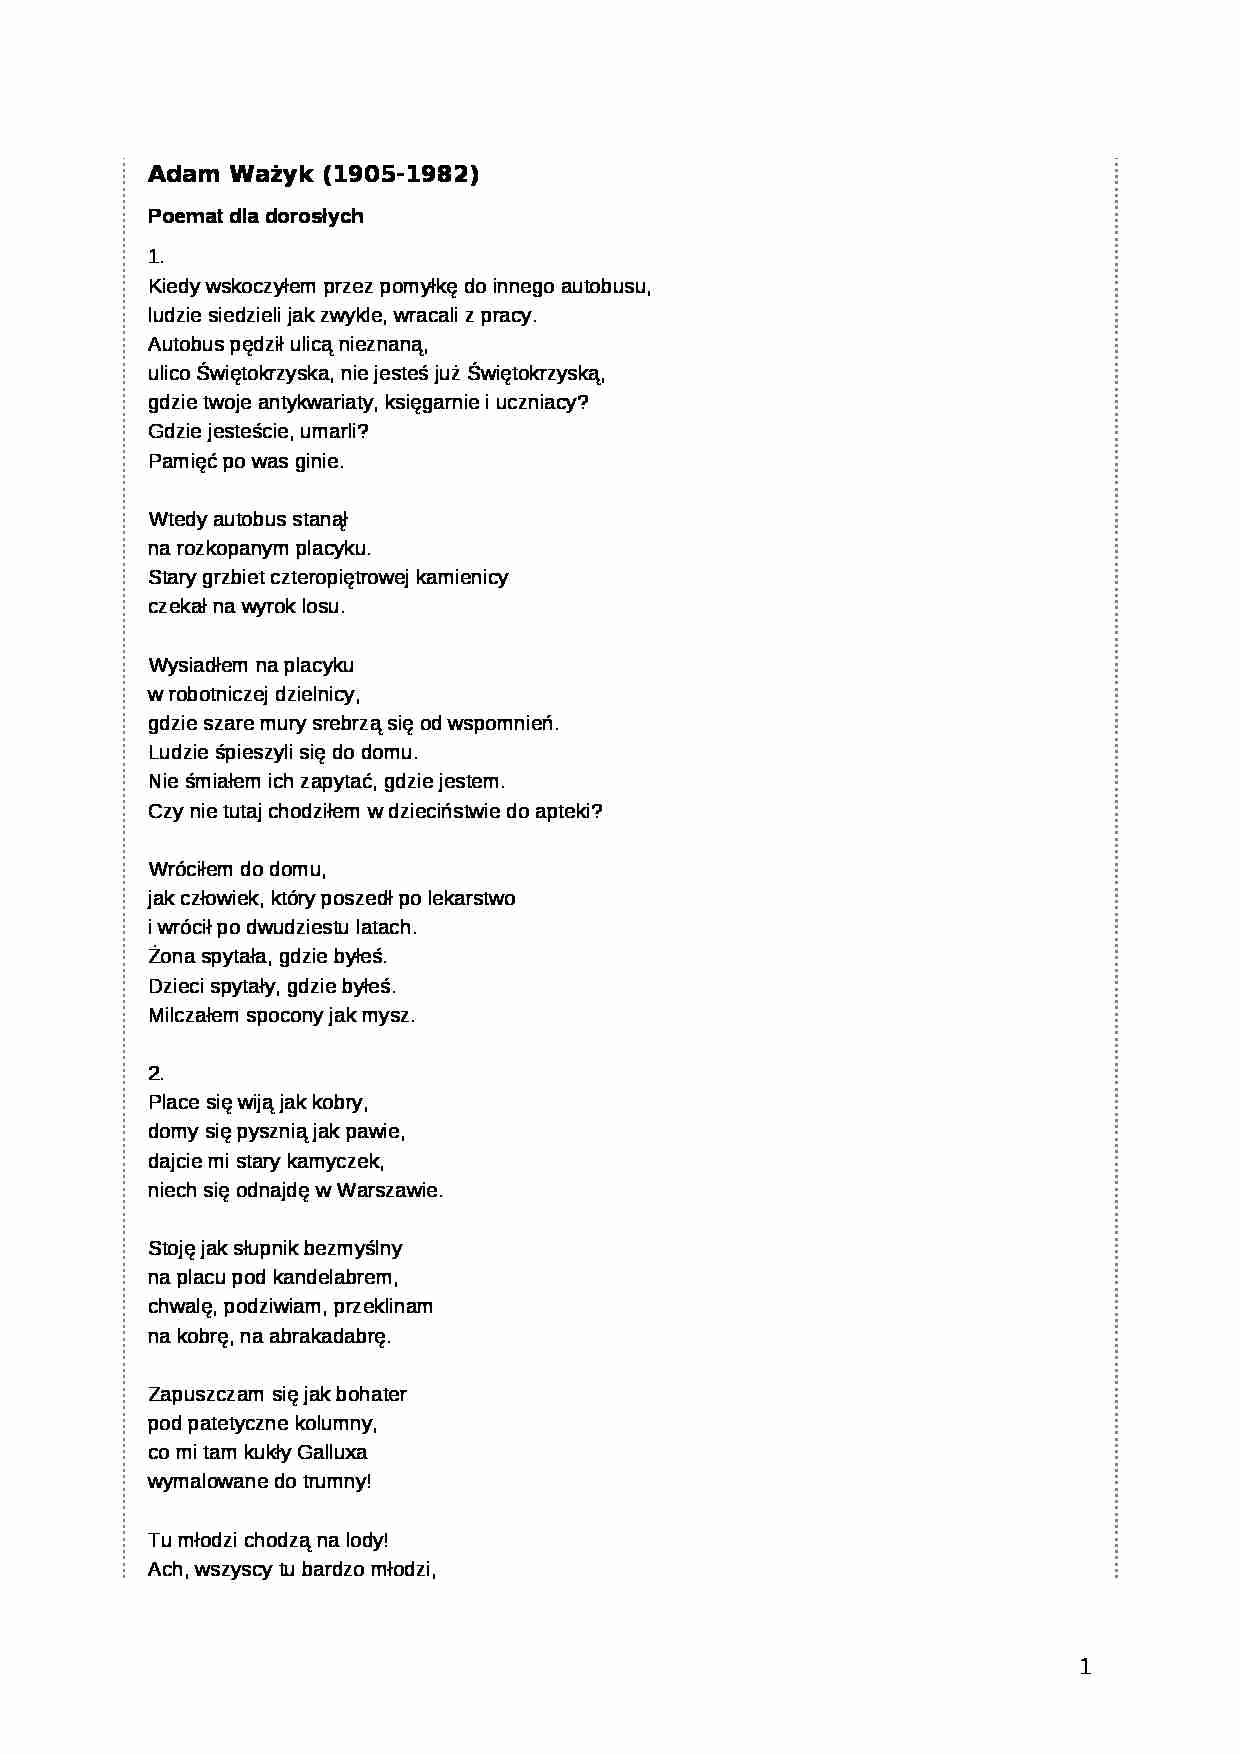 Adam Ważyk - Poemat dla dorosłych - strona 1